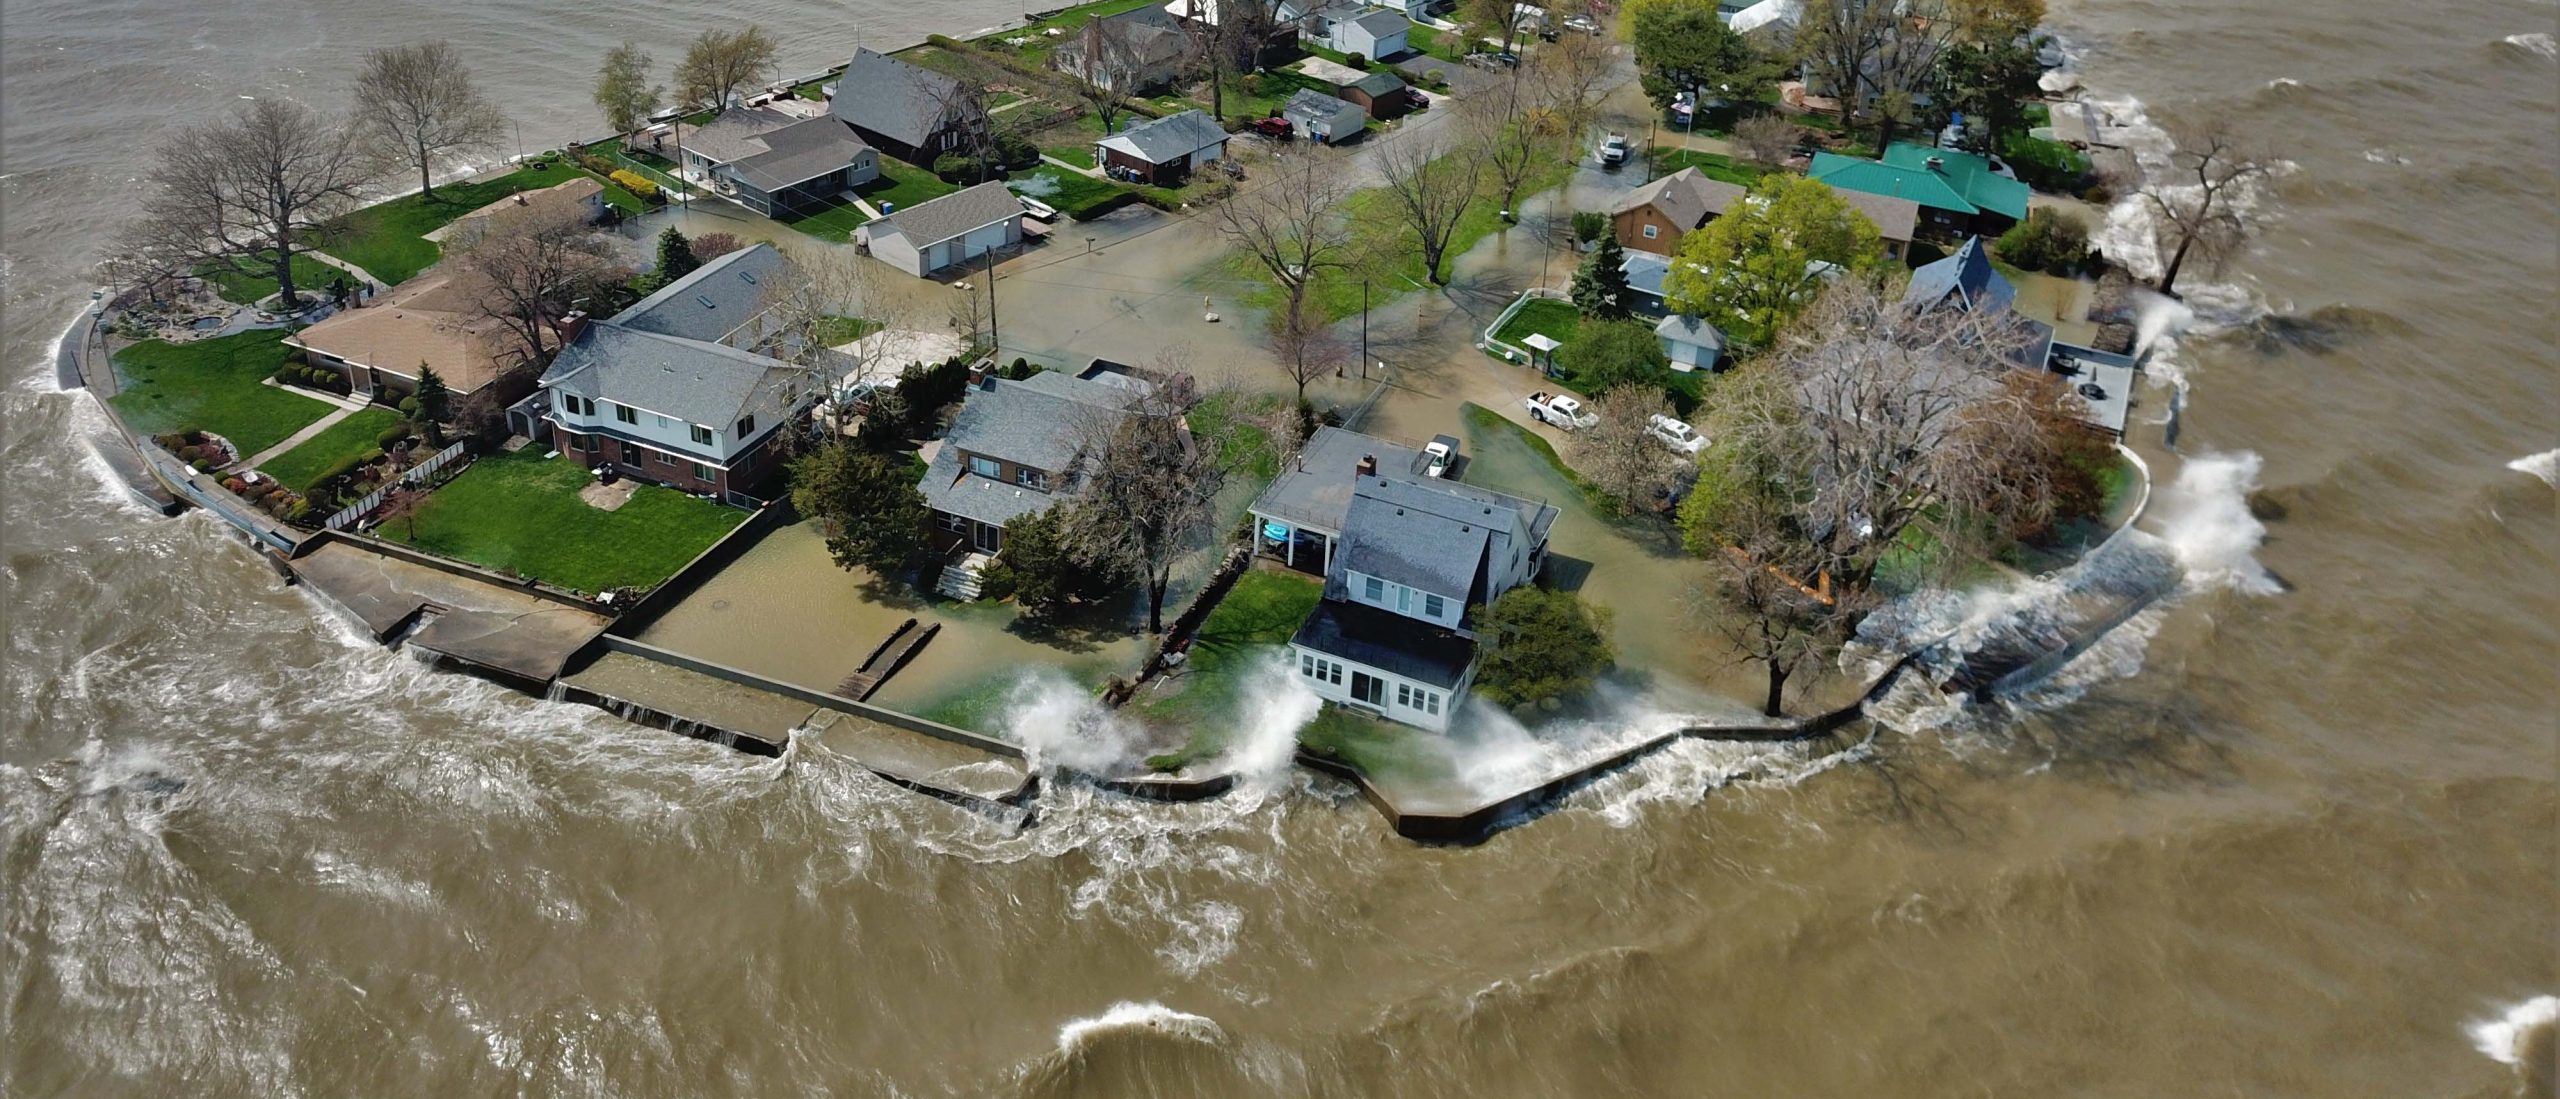 High water threatening suburban homes.